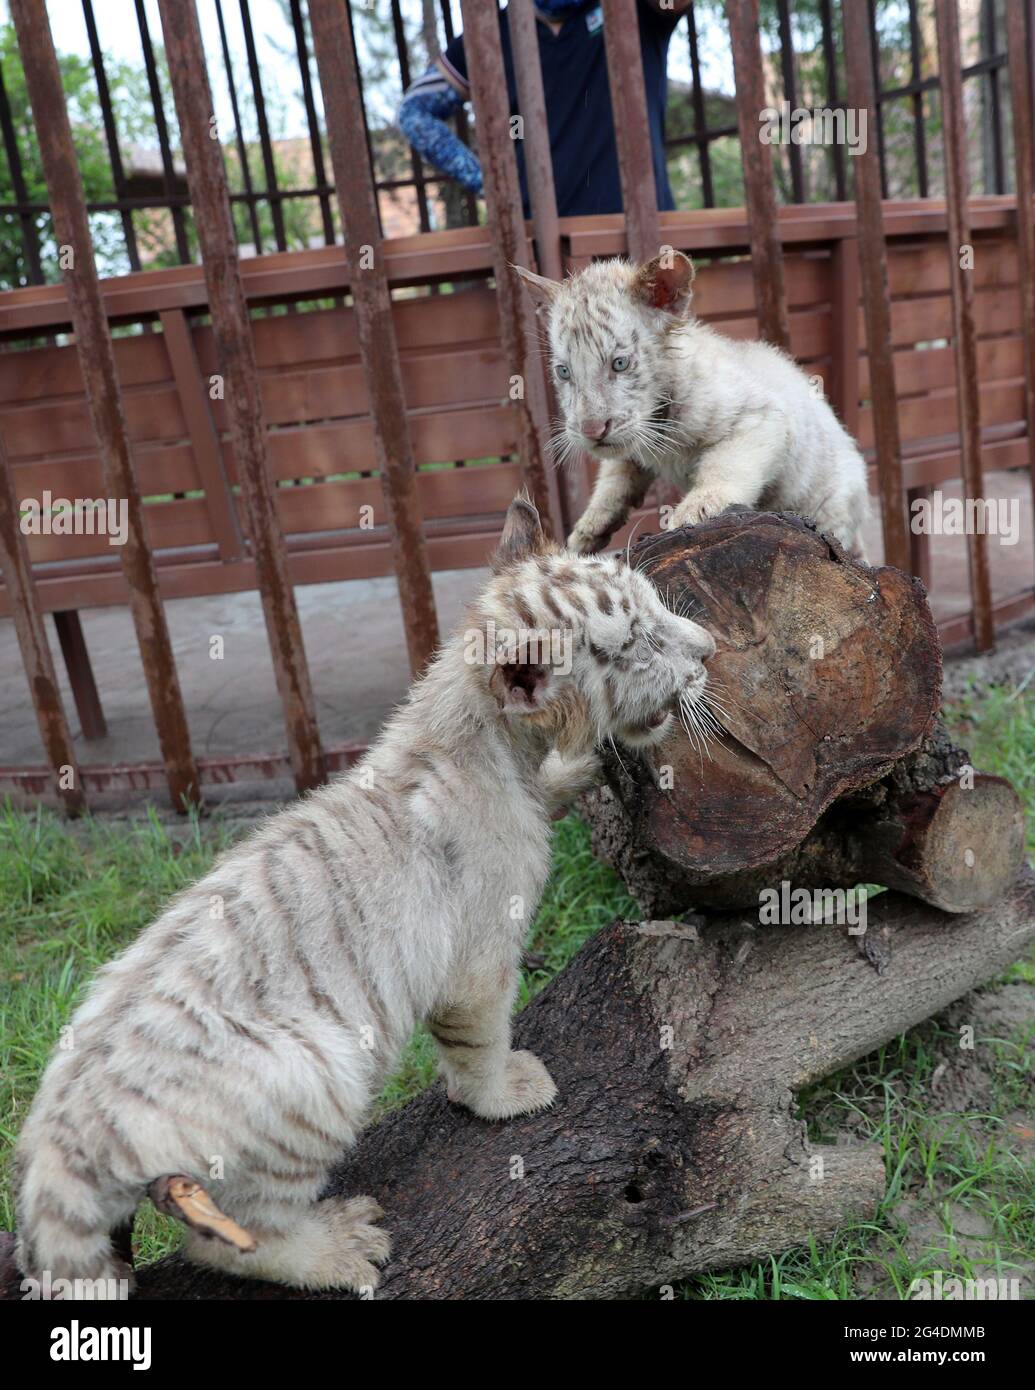 Nantong, Nantong, Chine. 21 juin 2021. Le 18 juin 2021, de mignons triplés de petits oursons de tigre blanc sont apparus dans la zone de la cabane des arbres de Sandi Tribe, dans le parc naturel de la forêt de Nantong, dans la province de Jiangsu, pour s'adapter au nouveau site. Les trois petits tigres blancs sont nés en avril et sont tous des hommes. Les petits tigres blancs vivront dans cette zone et auront un contact étroit avec les touristes dans la zone de la maison d'arbres. Il est entendu que c'est le premier triplés de tigre blanc rare qui a été élevé avec succès depuis l'ouverture du parc naturel de la forêt de Nantong en 2018. Les tigres blancs sont plus rares que les tigres ordinaires, et là Banque D'Images